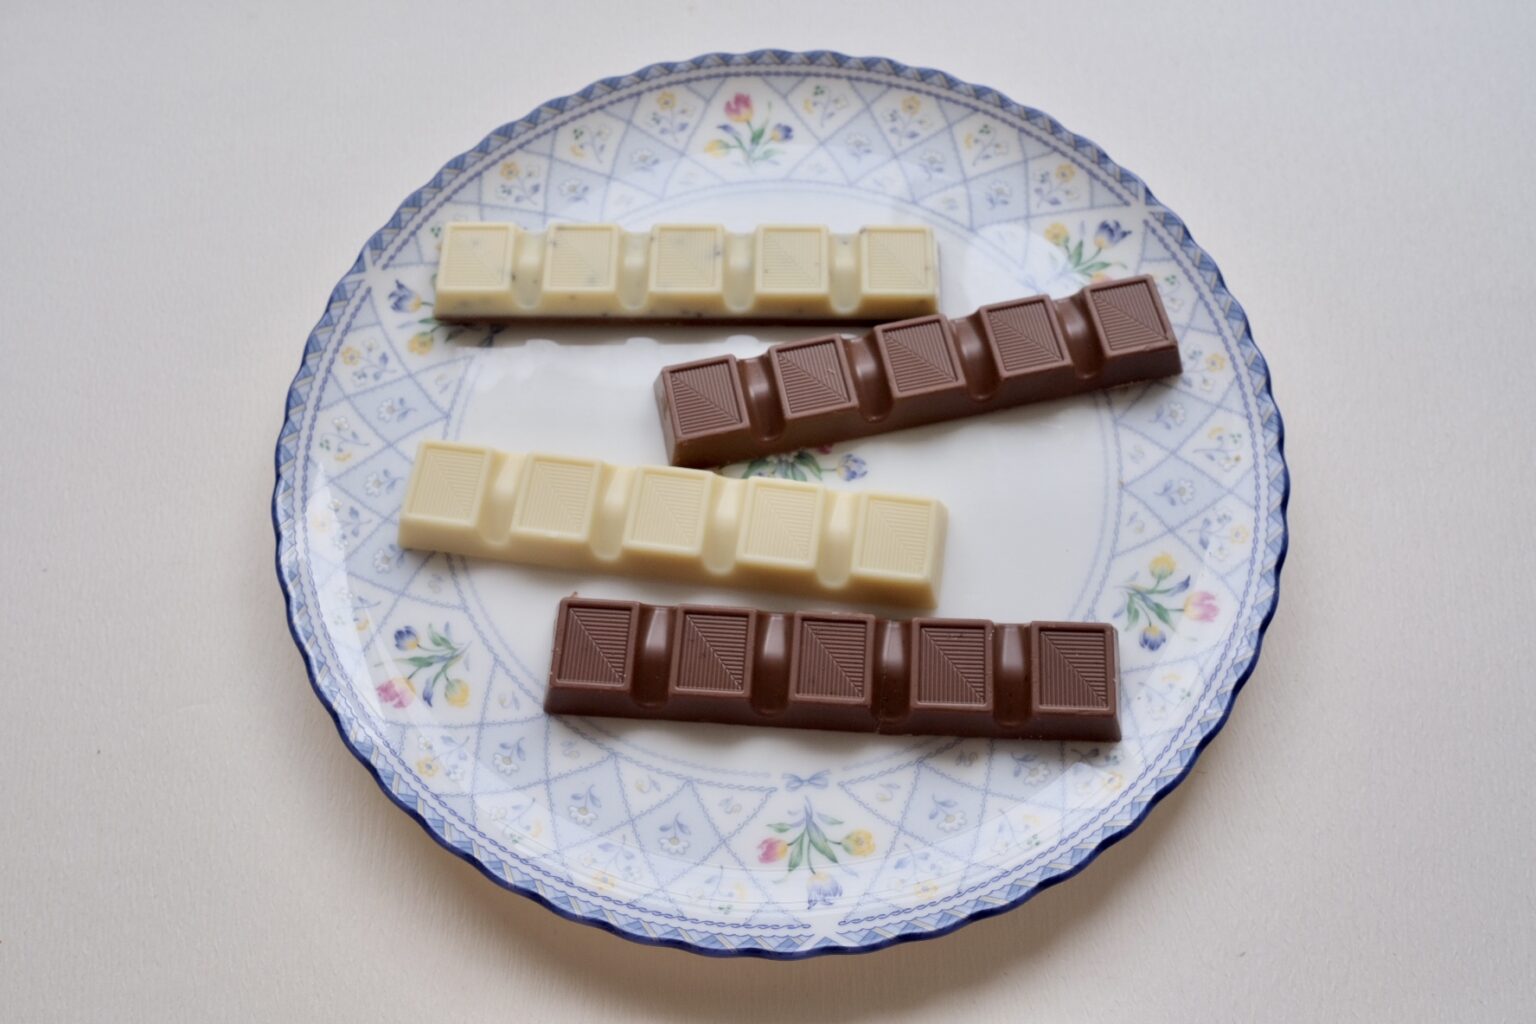 （上から）「ミルク＆ホワイトカプチーノチョコレート」「スムースミルクチョコレート」「クリーミーホワイトチョコレート」「ソルテッドキャラメルミルクチョコレート」。